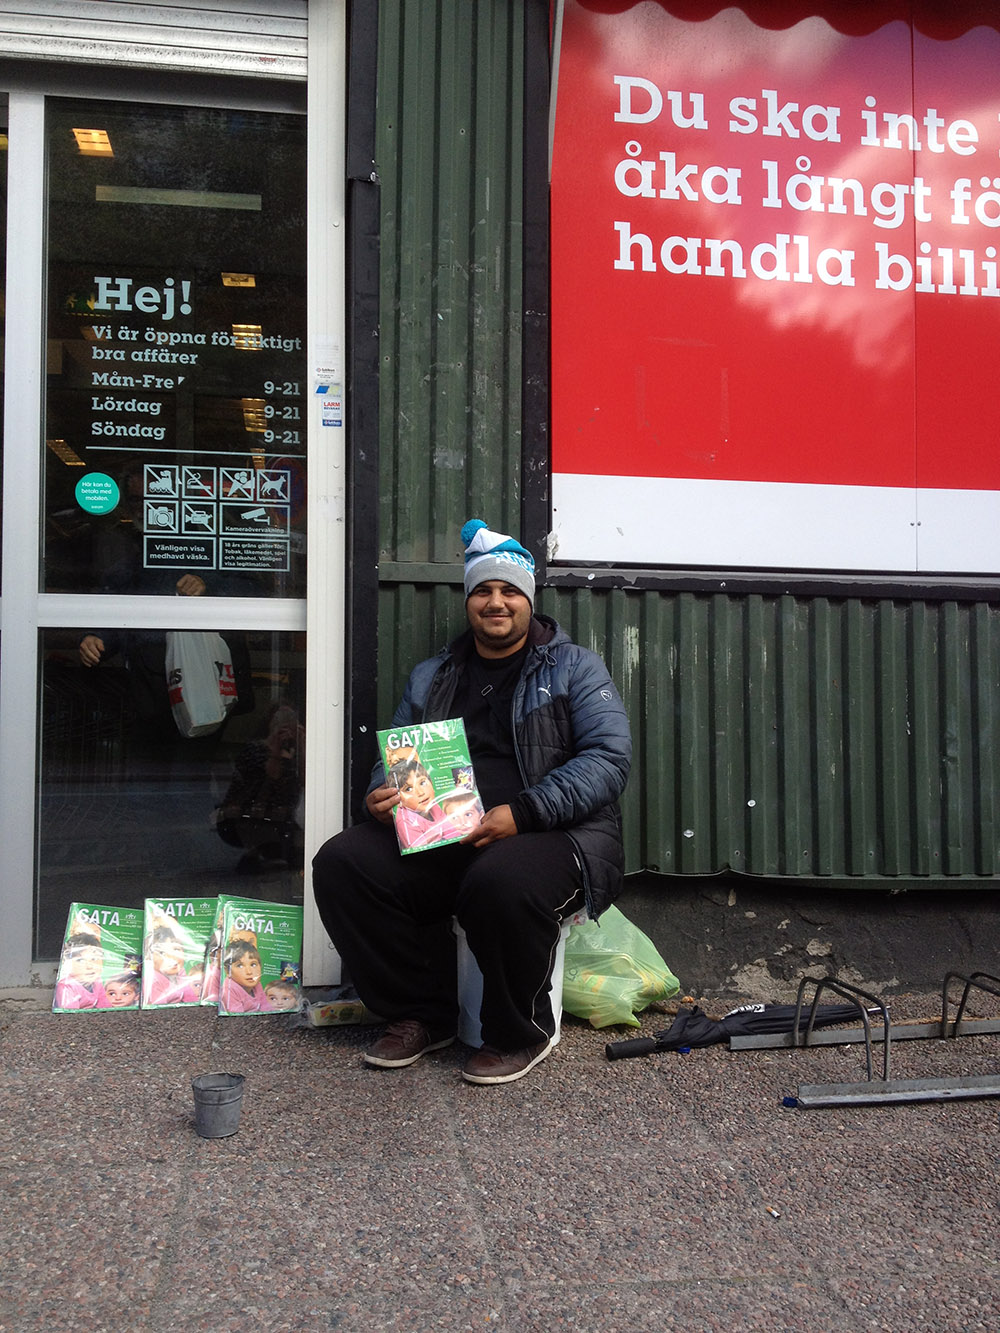 Catalin från Rumänien på plats utanför en mataffär i Göteborg.